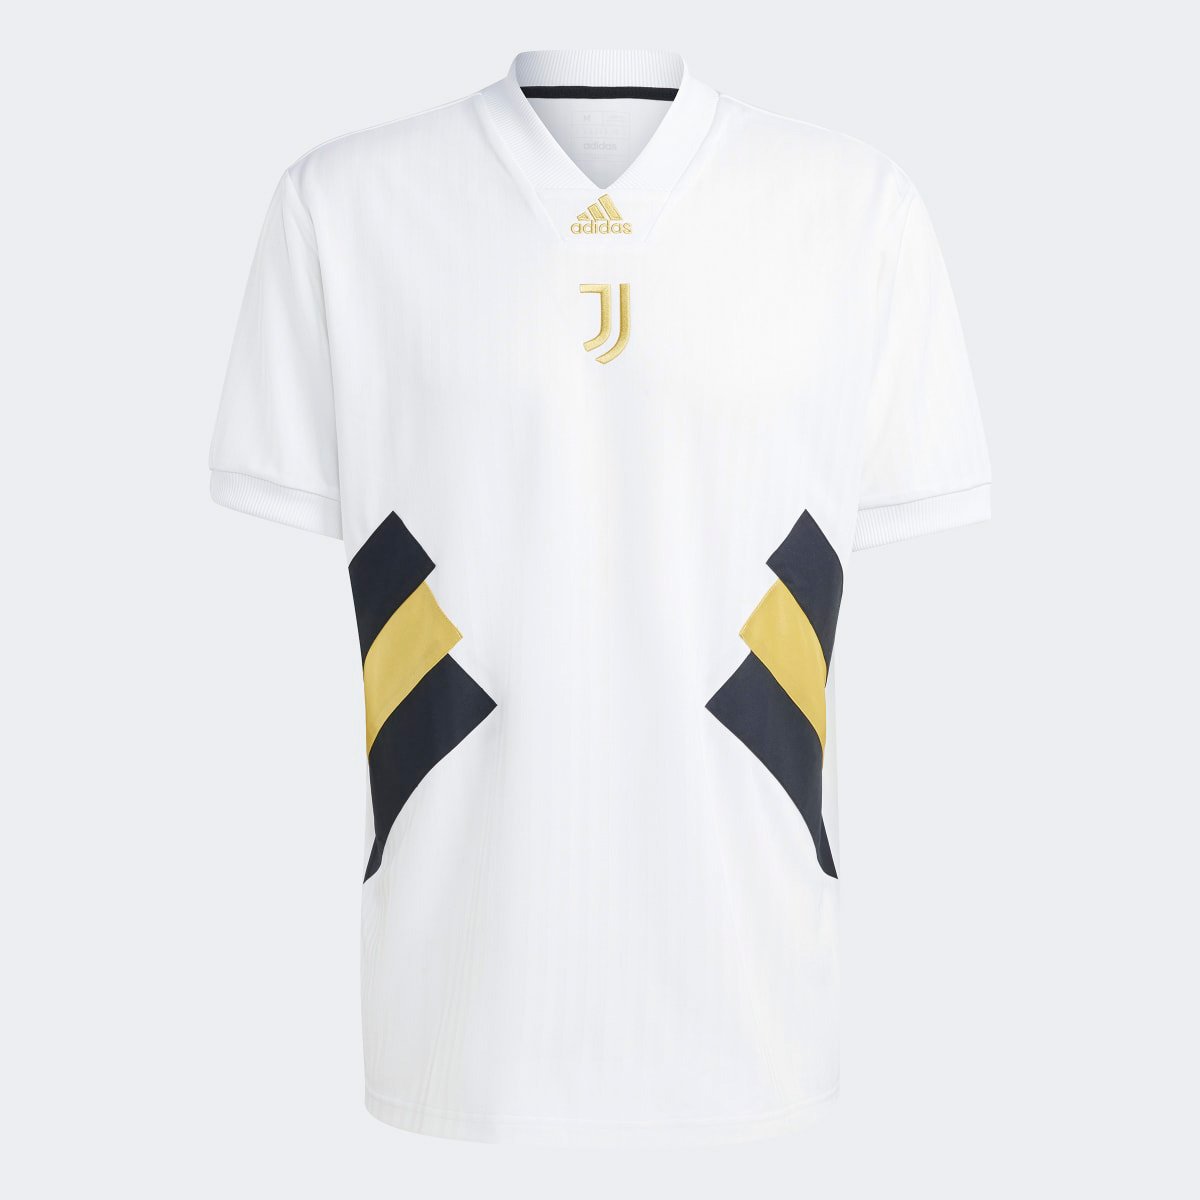 Camisa Juventus Adidas 23/24 s/n° Icon - Masculina